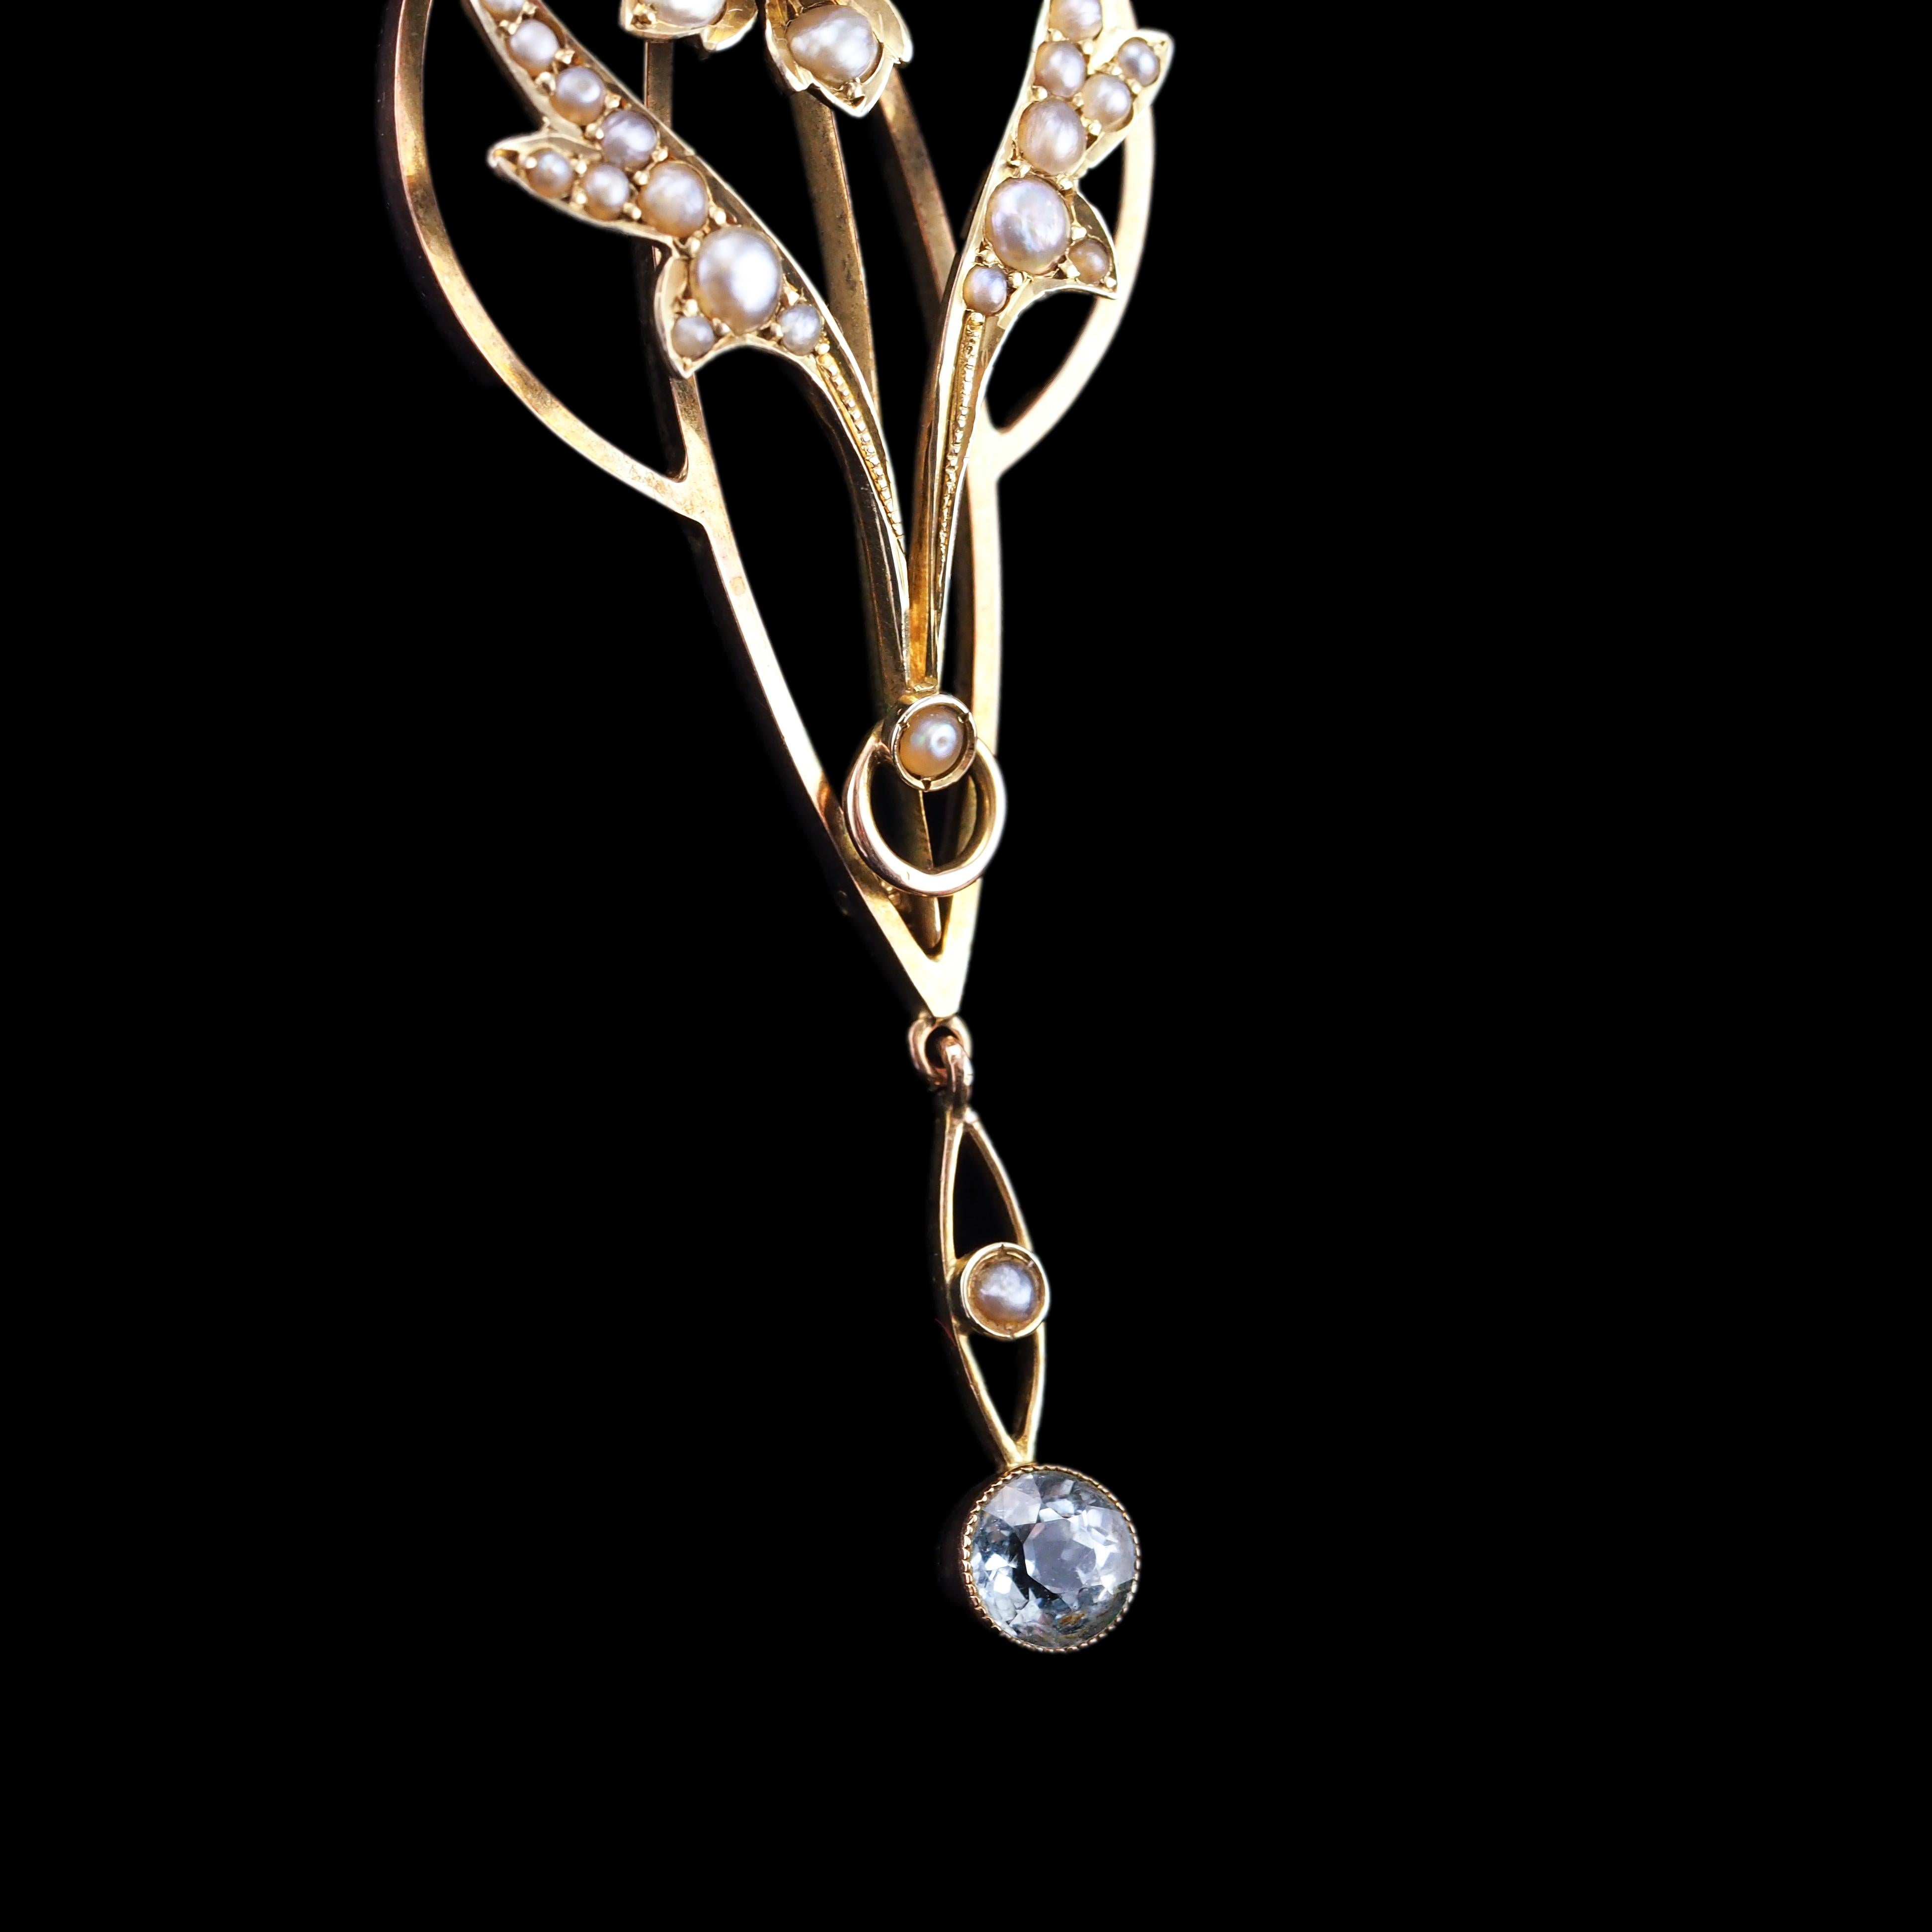 Antique Aquamarine Pendant Necklace Seed Pearls 9K Gold Art Nouveau c.1905 8